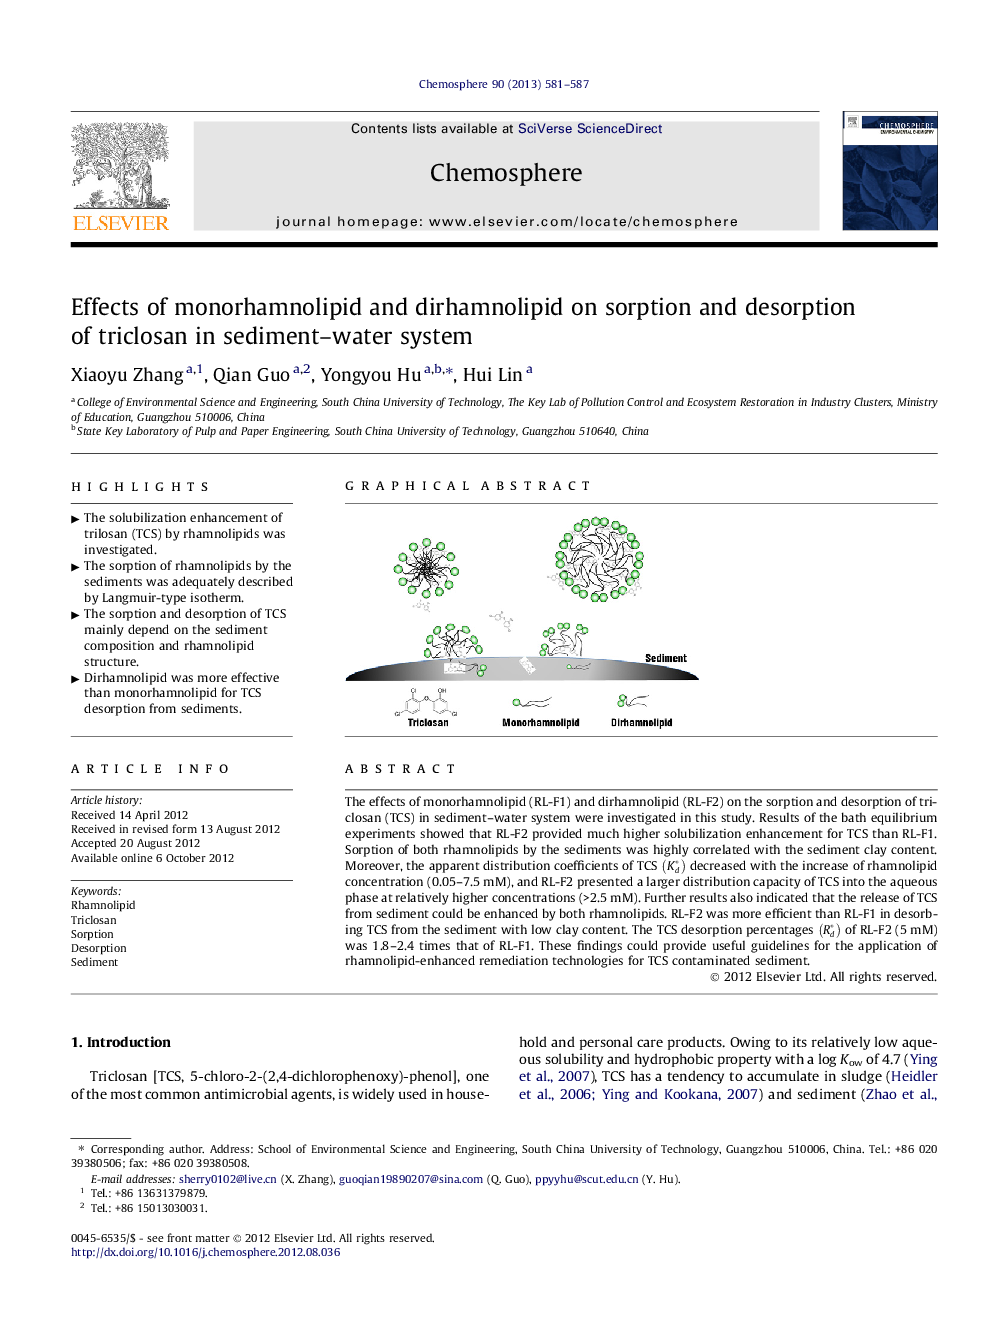 اثر مونورامانولیپید و دیرامنولیپید بر جذب و جذب تریکلوسان در سیستم رسوبی 